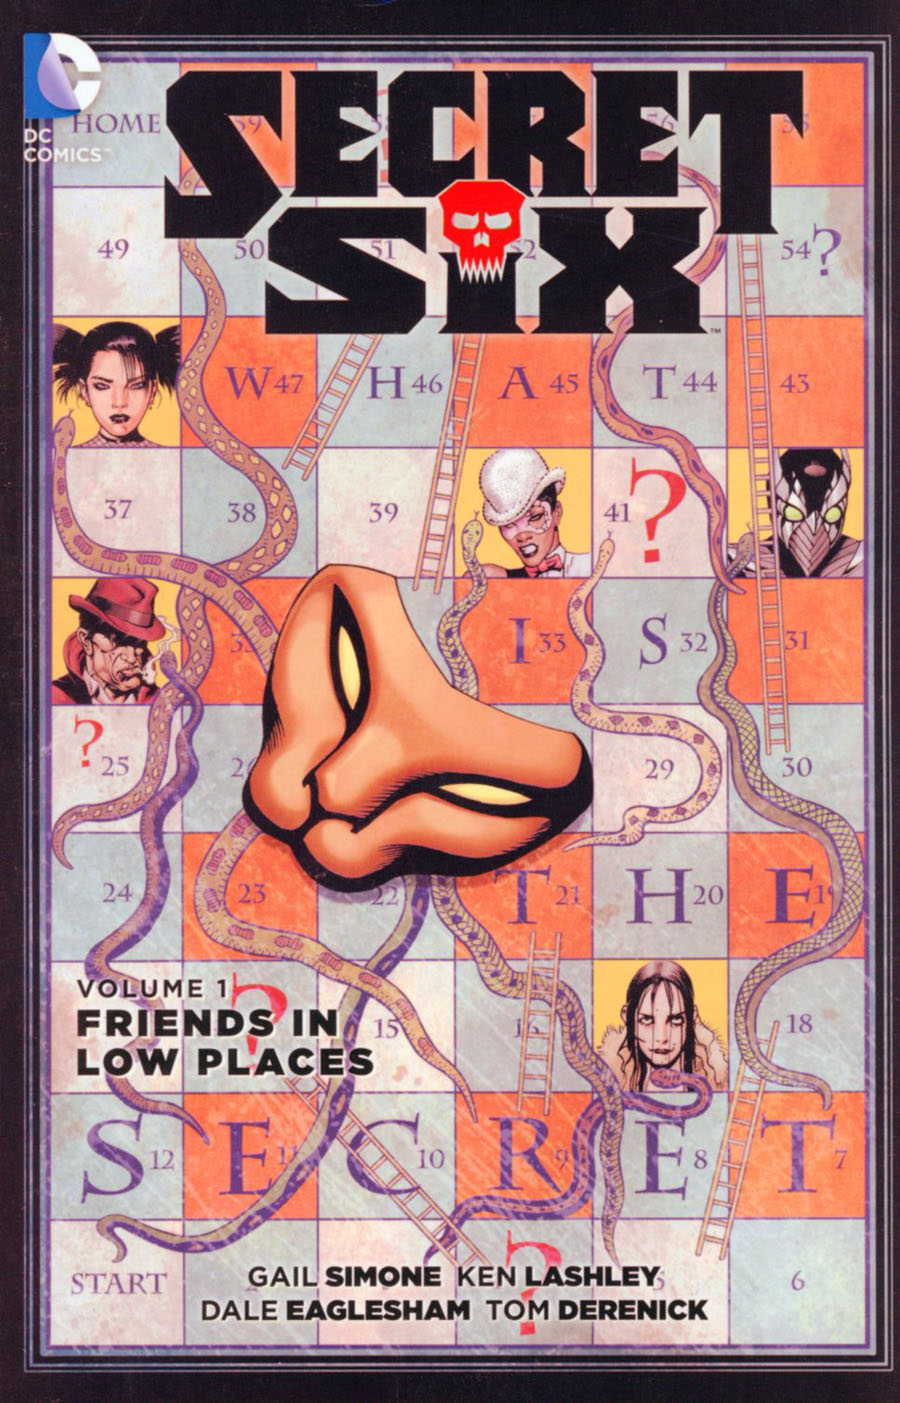 Secret Six (New 52) Vol 1 Friends In Low Places TP